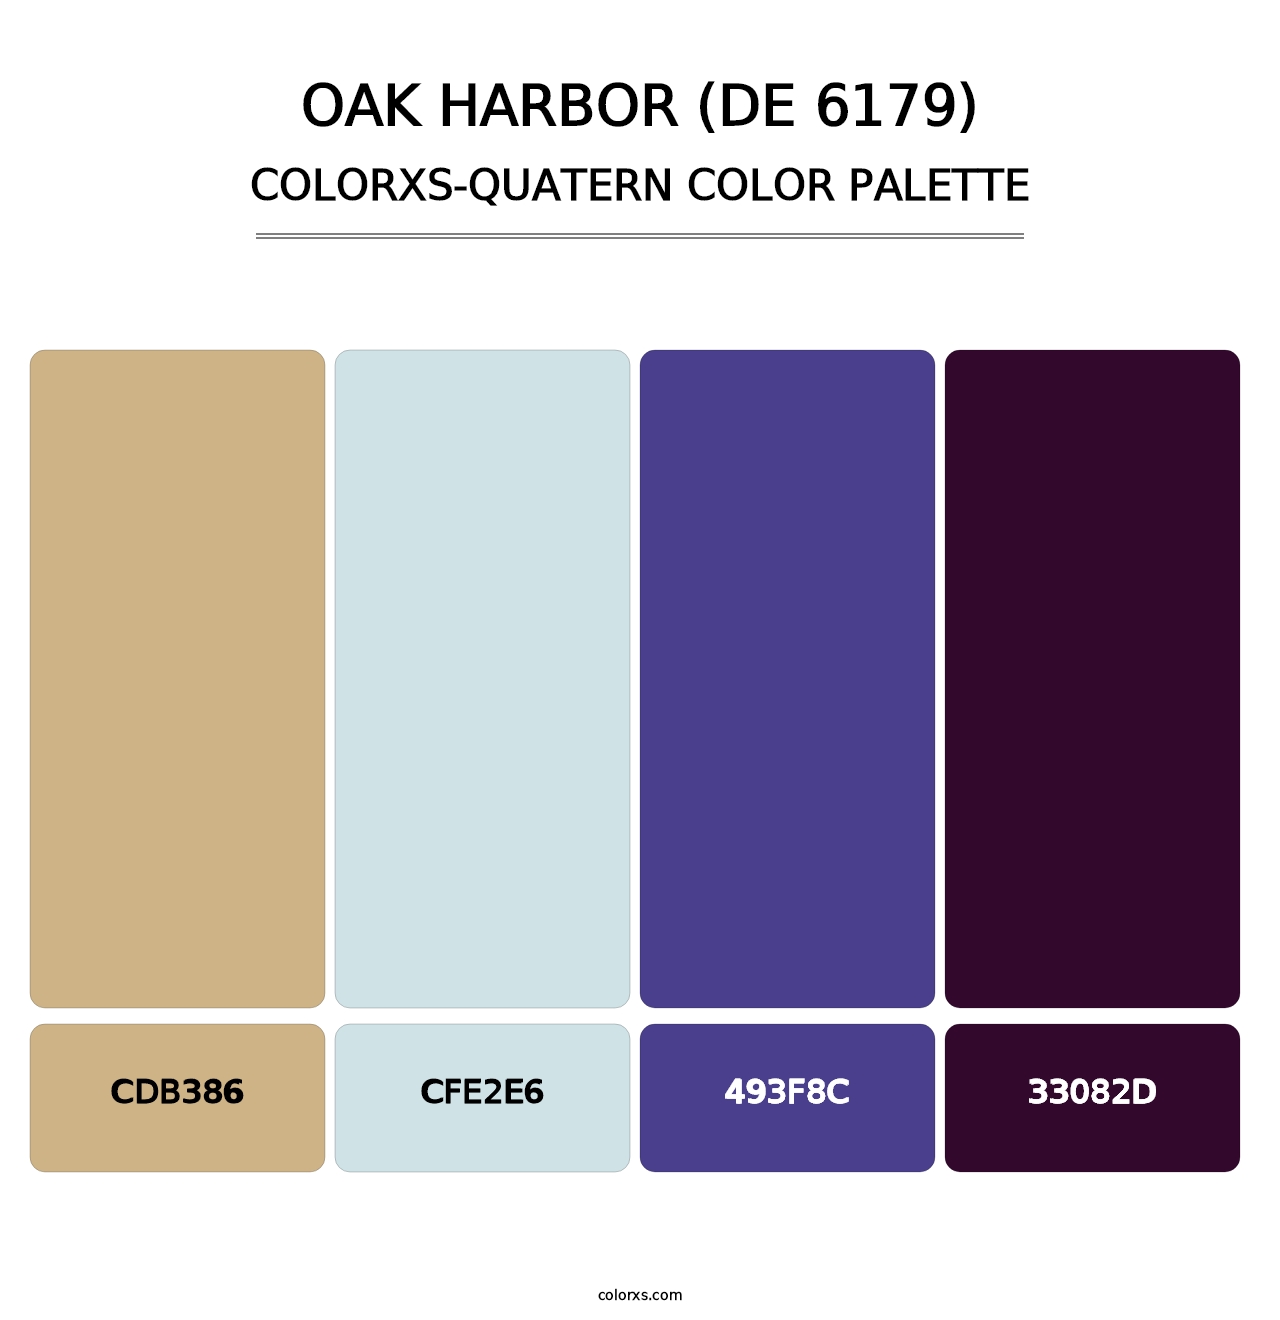 Oak Harbor (DE 6179) - Colorxs Quatern Palette